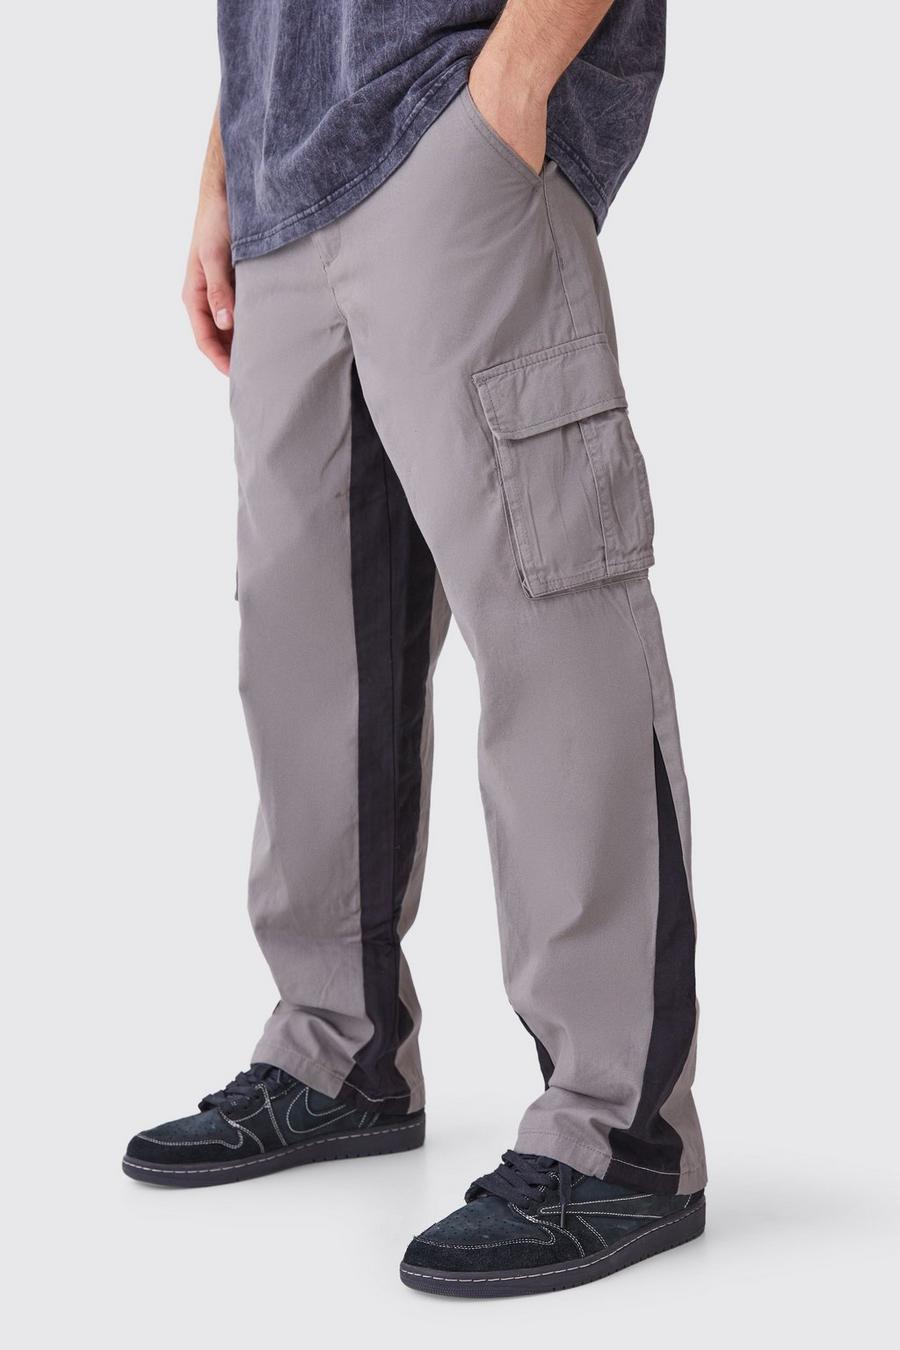 Pantaloni Cargo con inserti in vita fissa, Grey